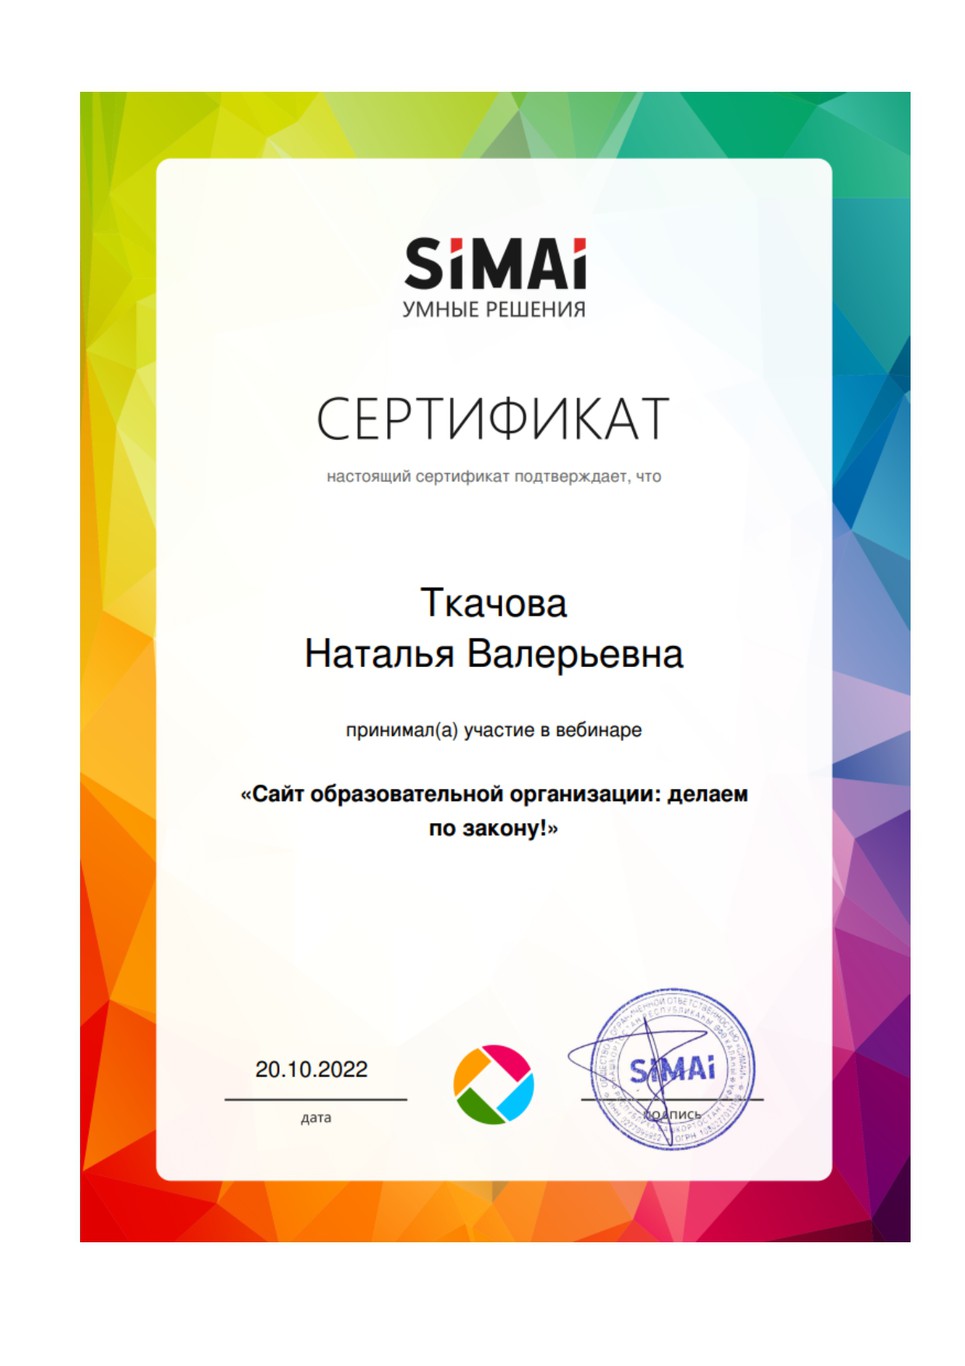 Сертификат Ткачовой Н.В. за участие в  вебинаре "Сайт образовательной организации: делаем по закону!"